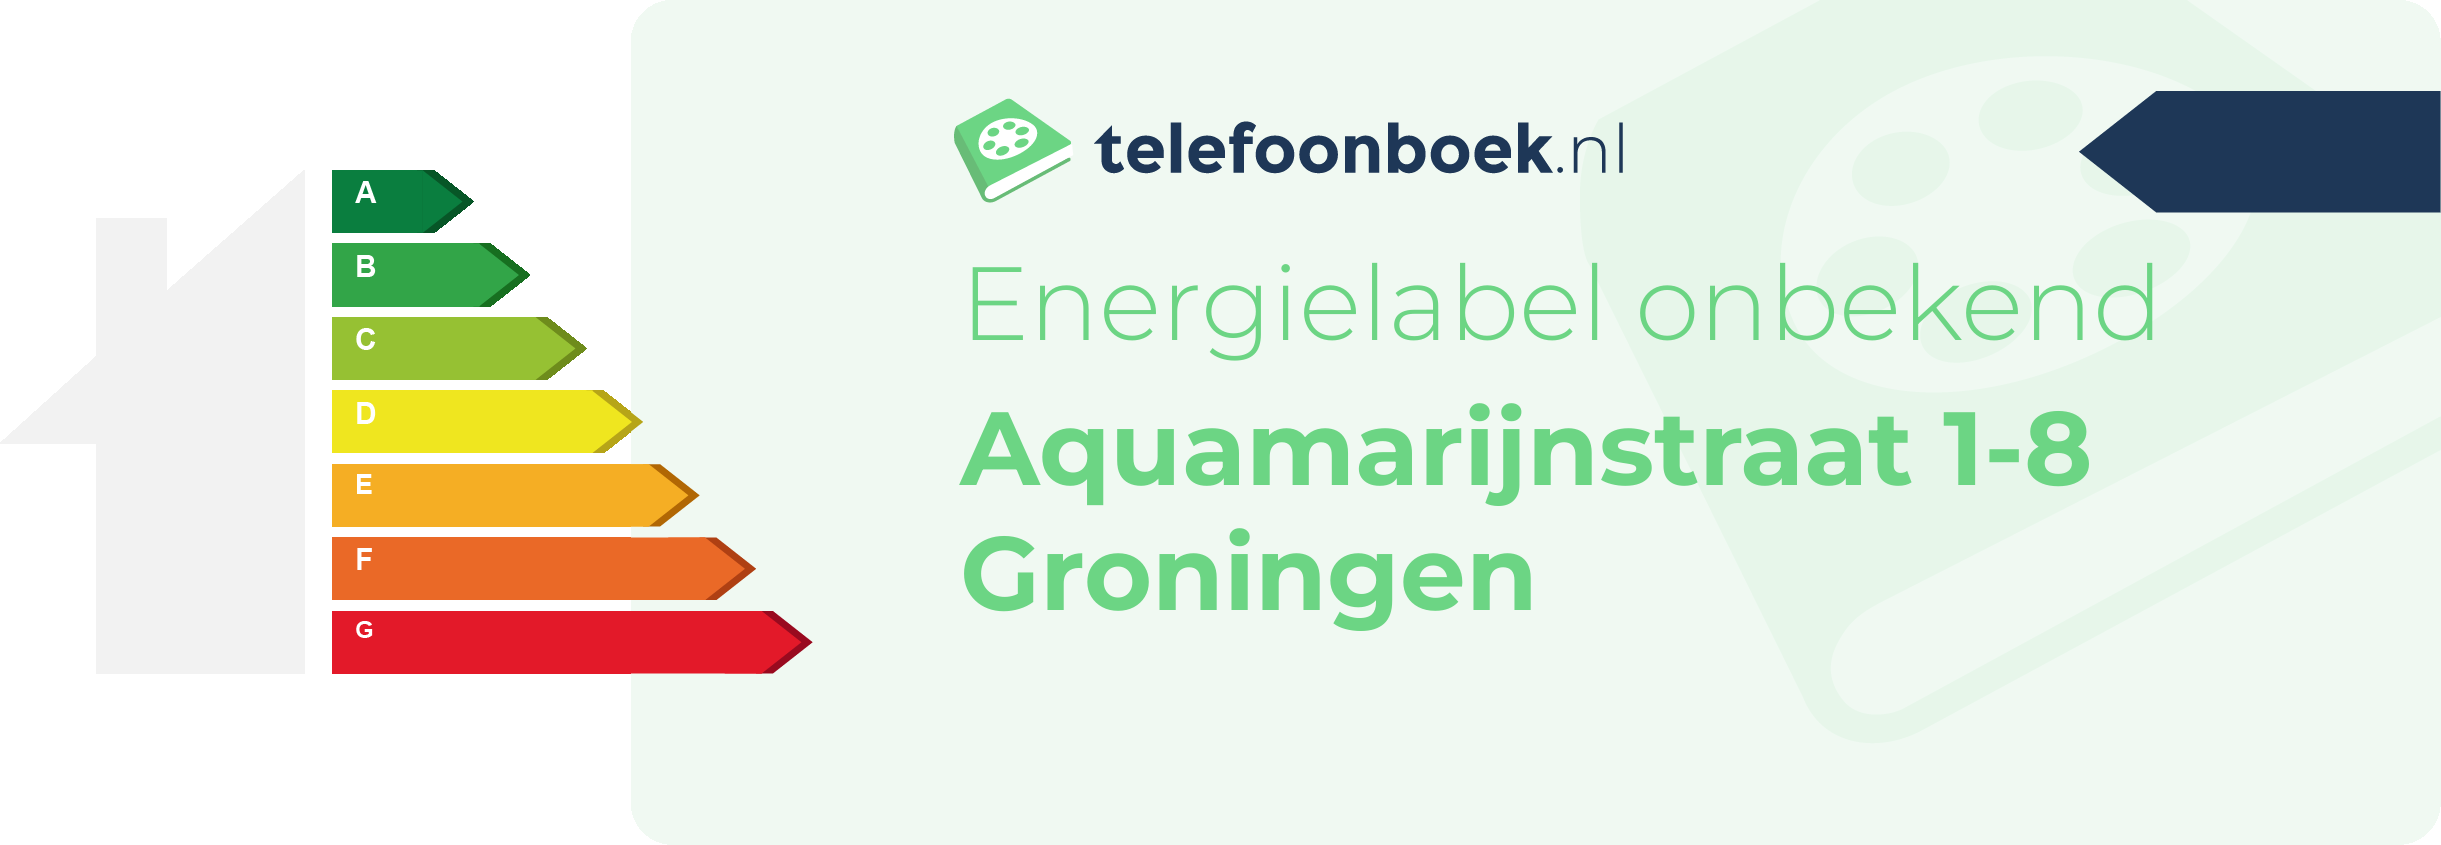 Energielabel Aquamarijnstraat 1-8 Groningen